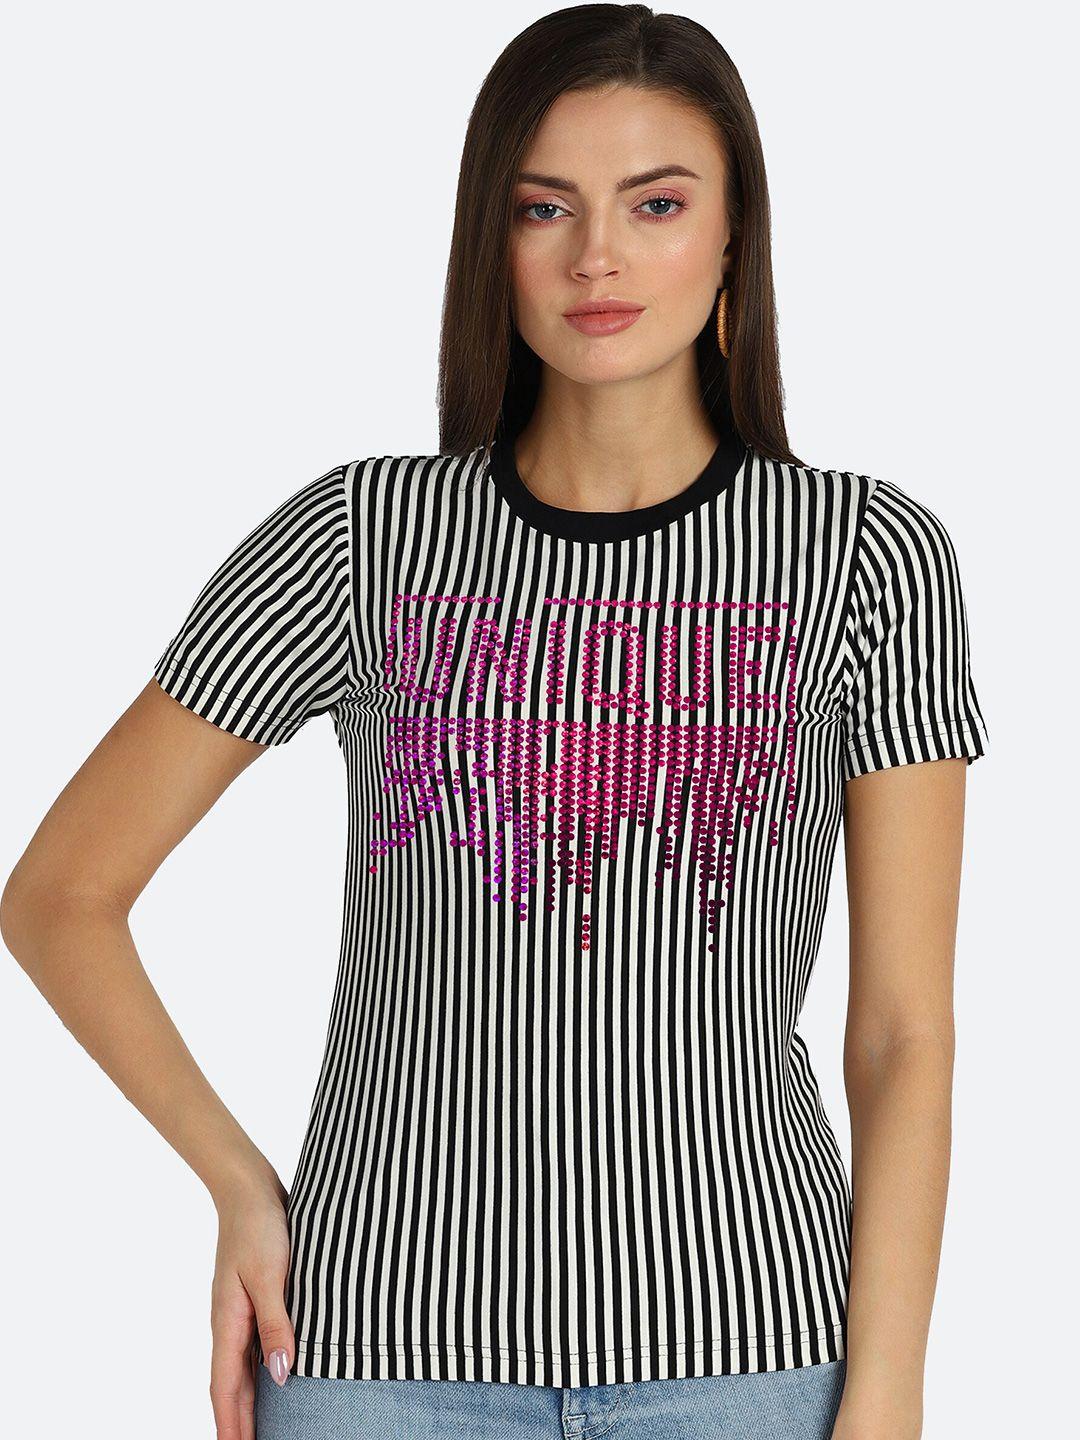 shashvi women black & white striped t-shirt